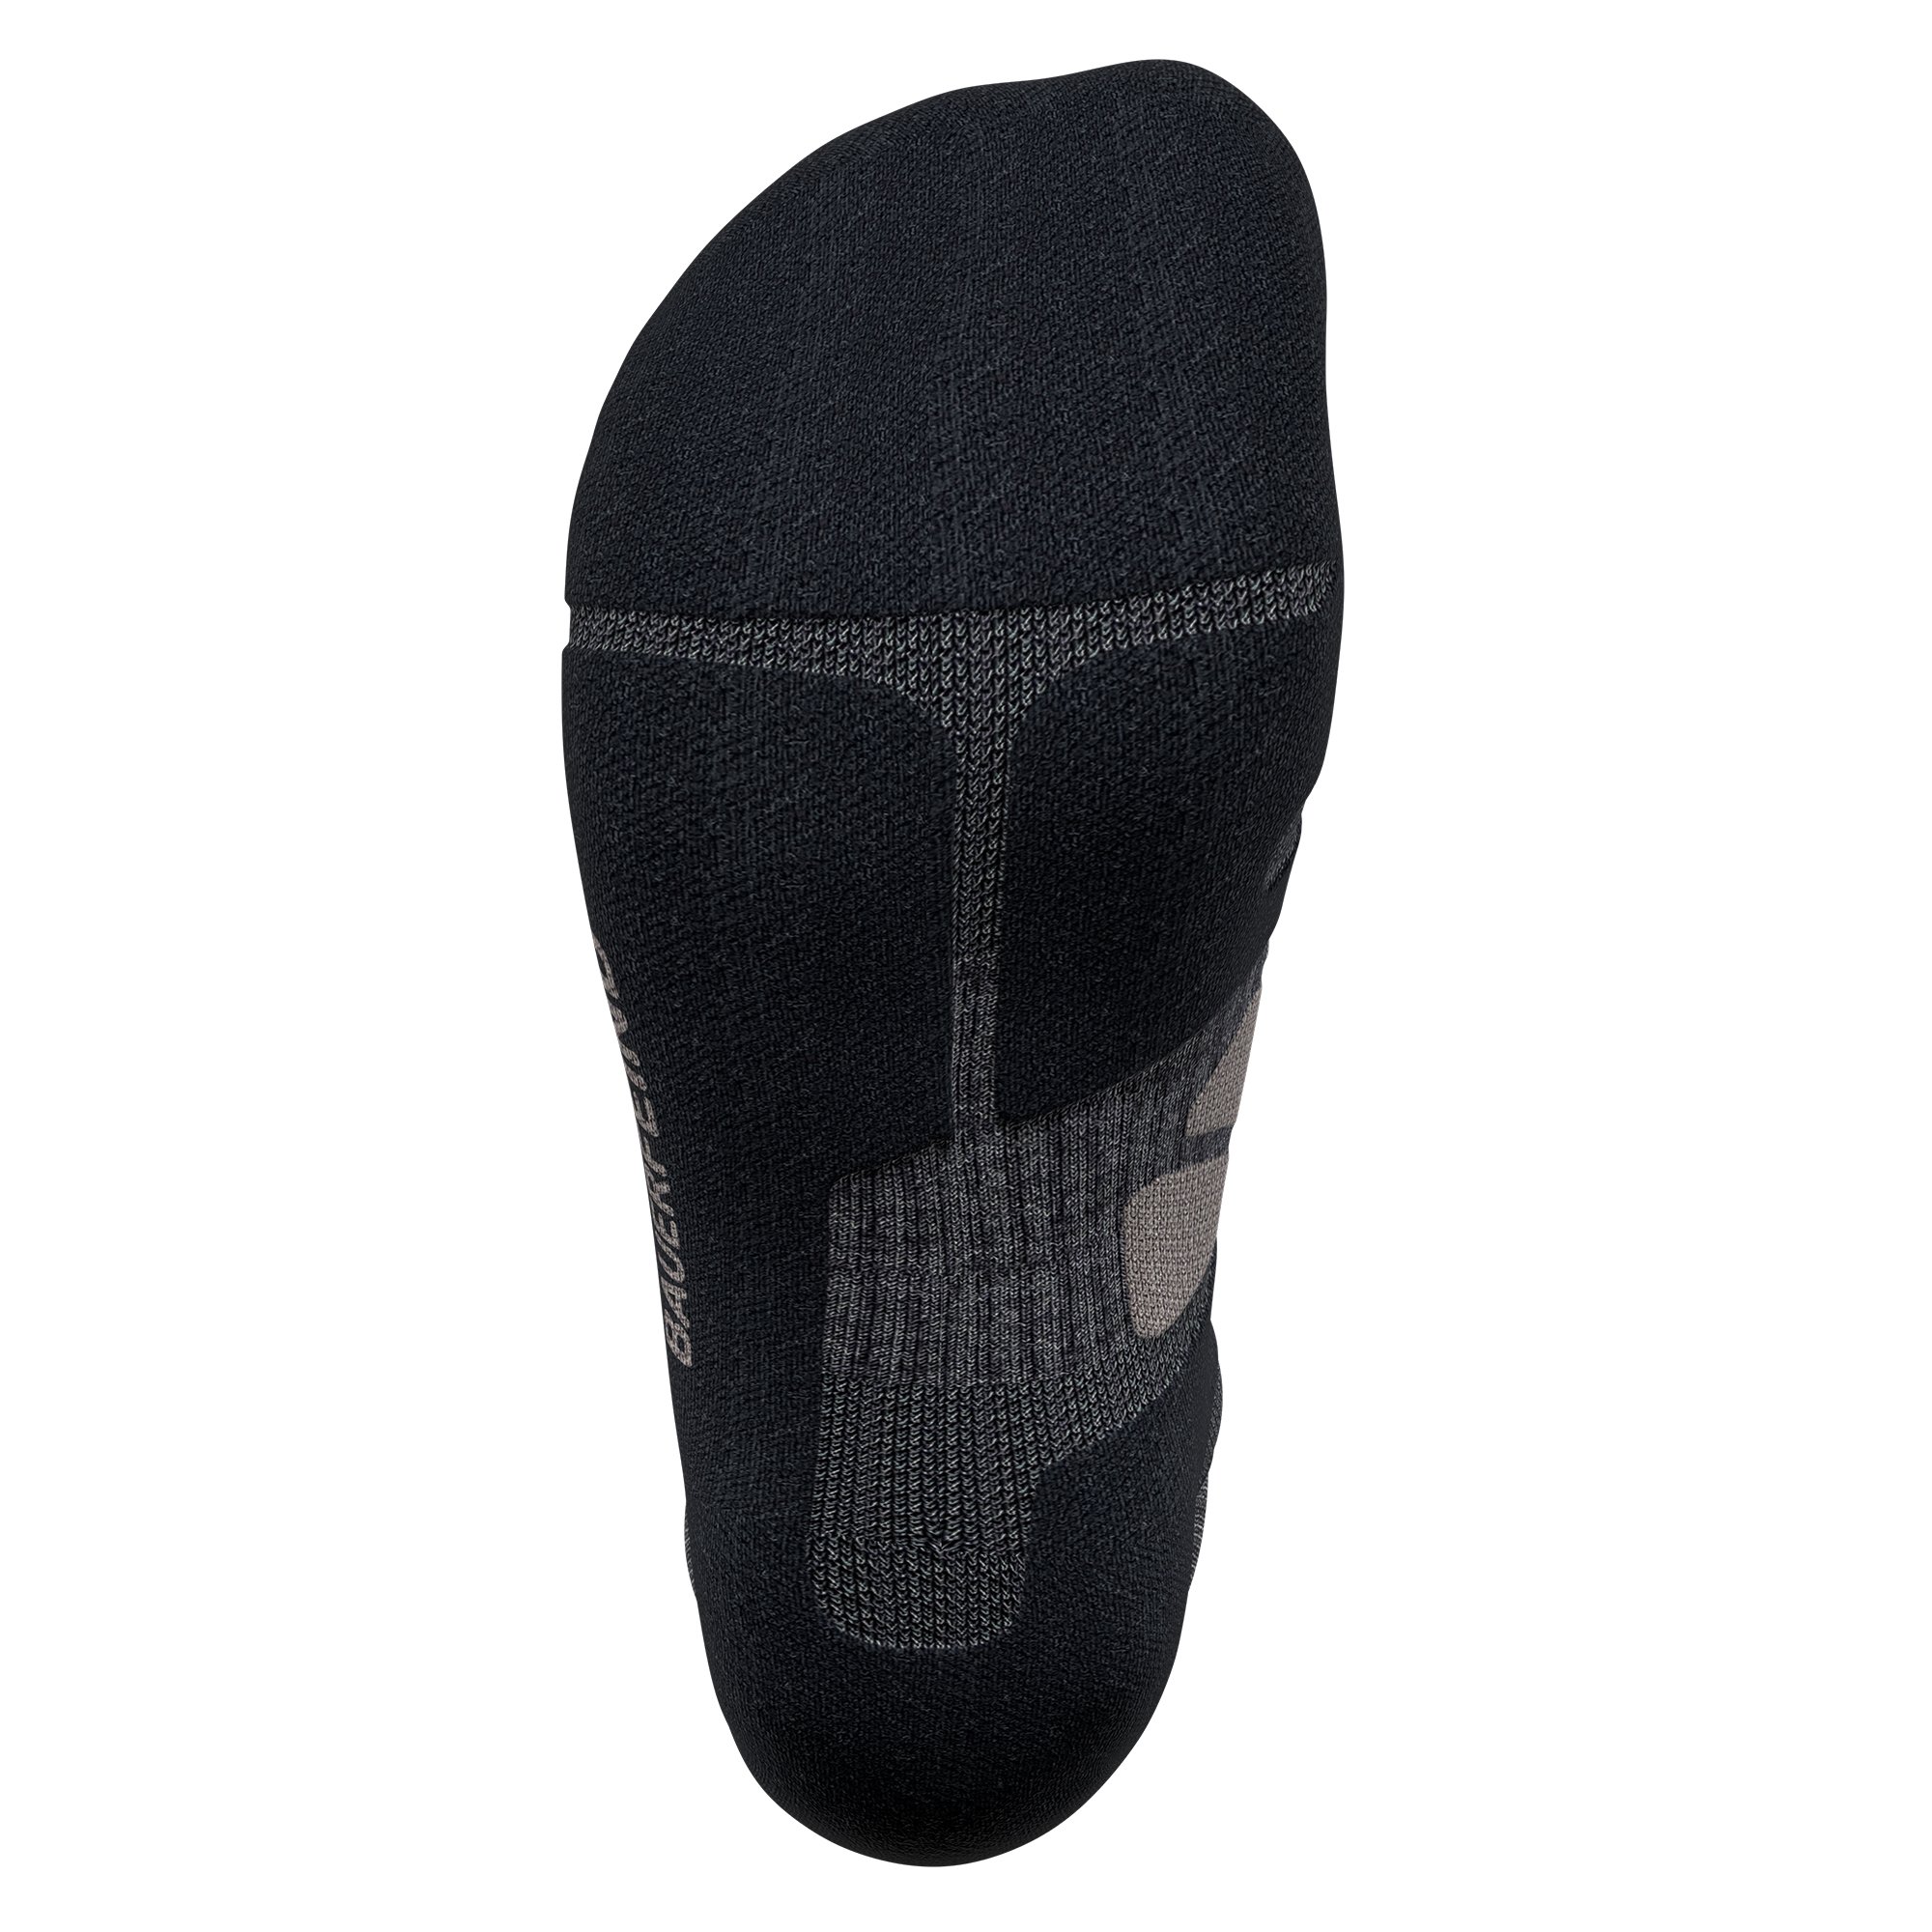 Bauerfeind Sports Outdoor Merino Compression Socks